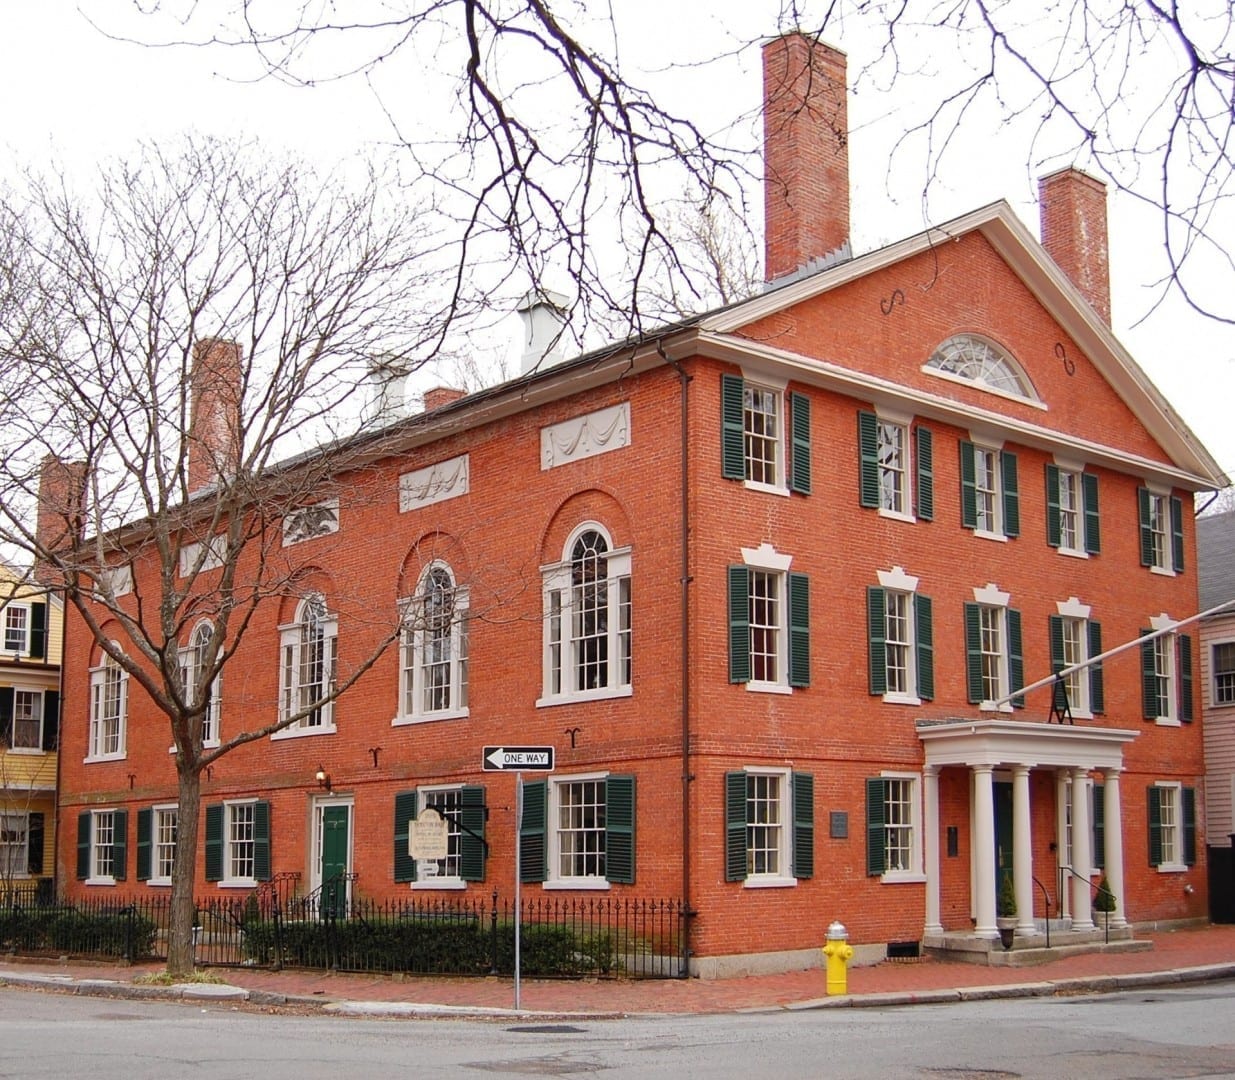 9 Chestnut Street en el distrito histórico de Samuel McIntyre por Samuel McIntire (1805) Salem MA Estados Unidos